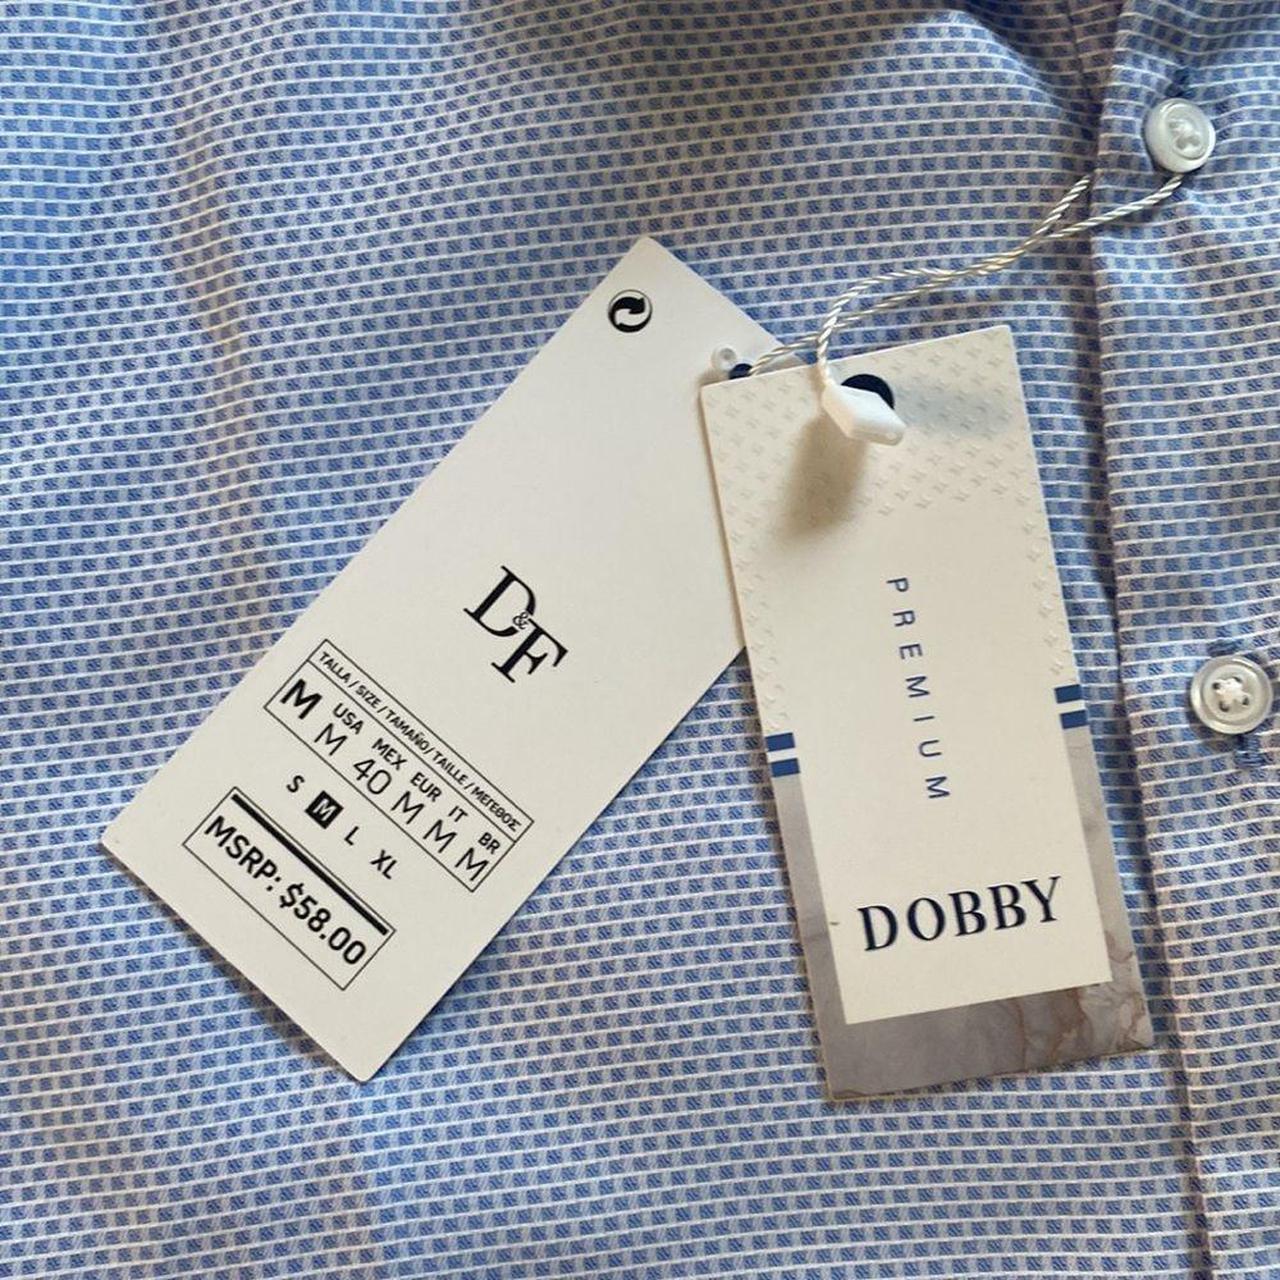 Jhens garments - Louis Vuitton T-shirt S.m.l.xl